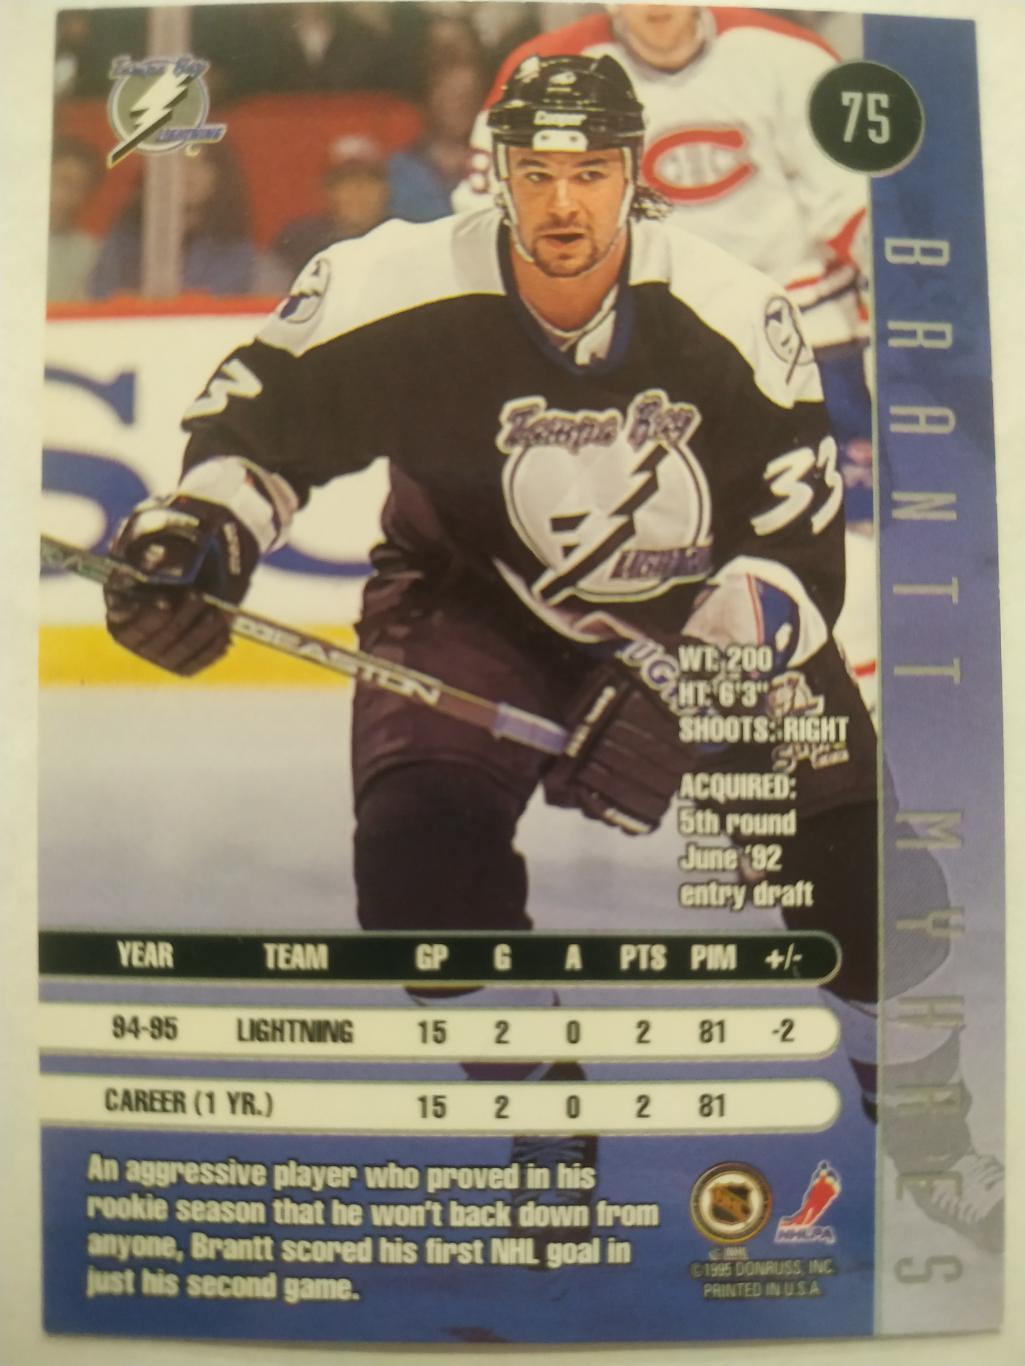 ХОККЕЙ КАРТОЧКА НХЛ DONRUSS LEAF 1995-96 BRANTT MYHRES TAMPA BAY LIGHNTING #75 1